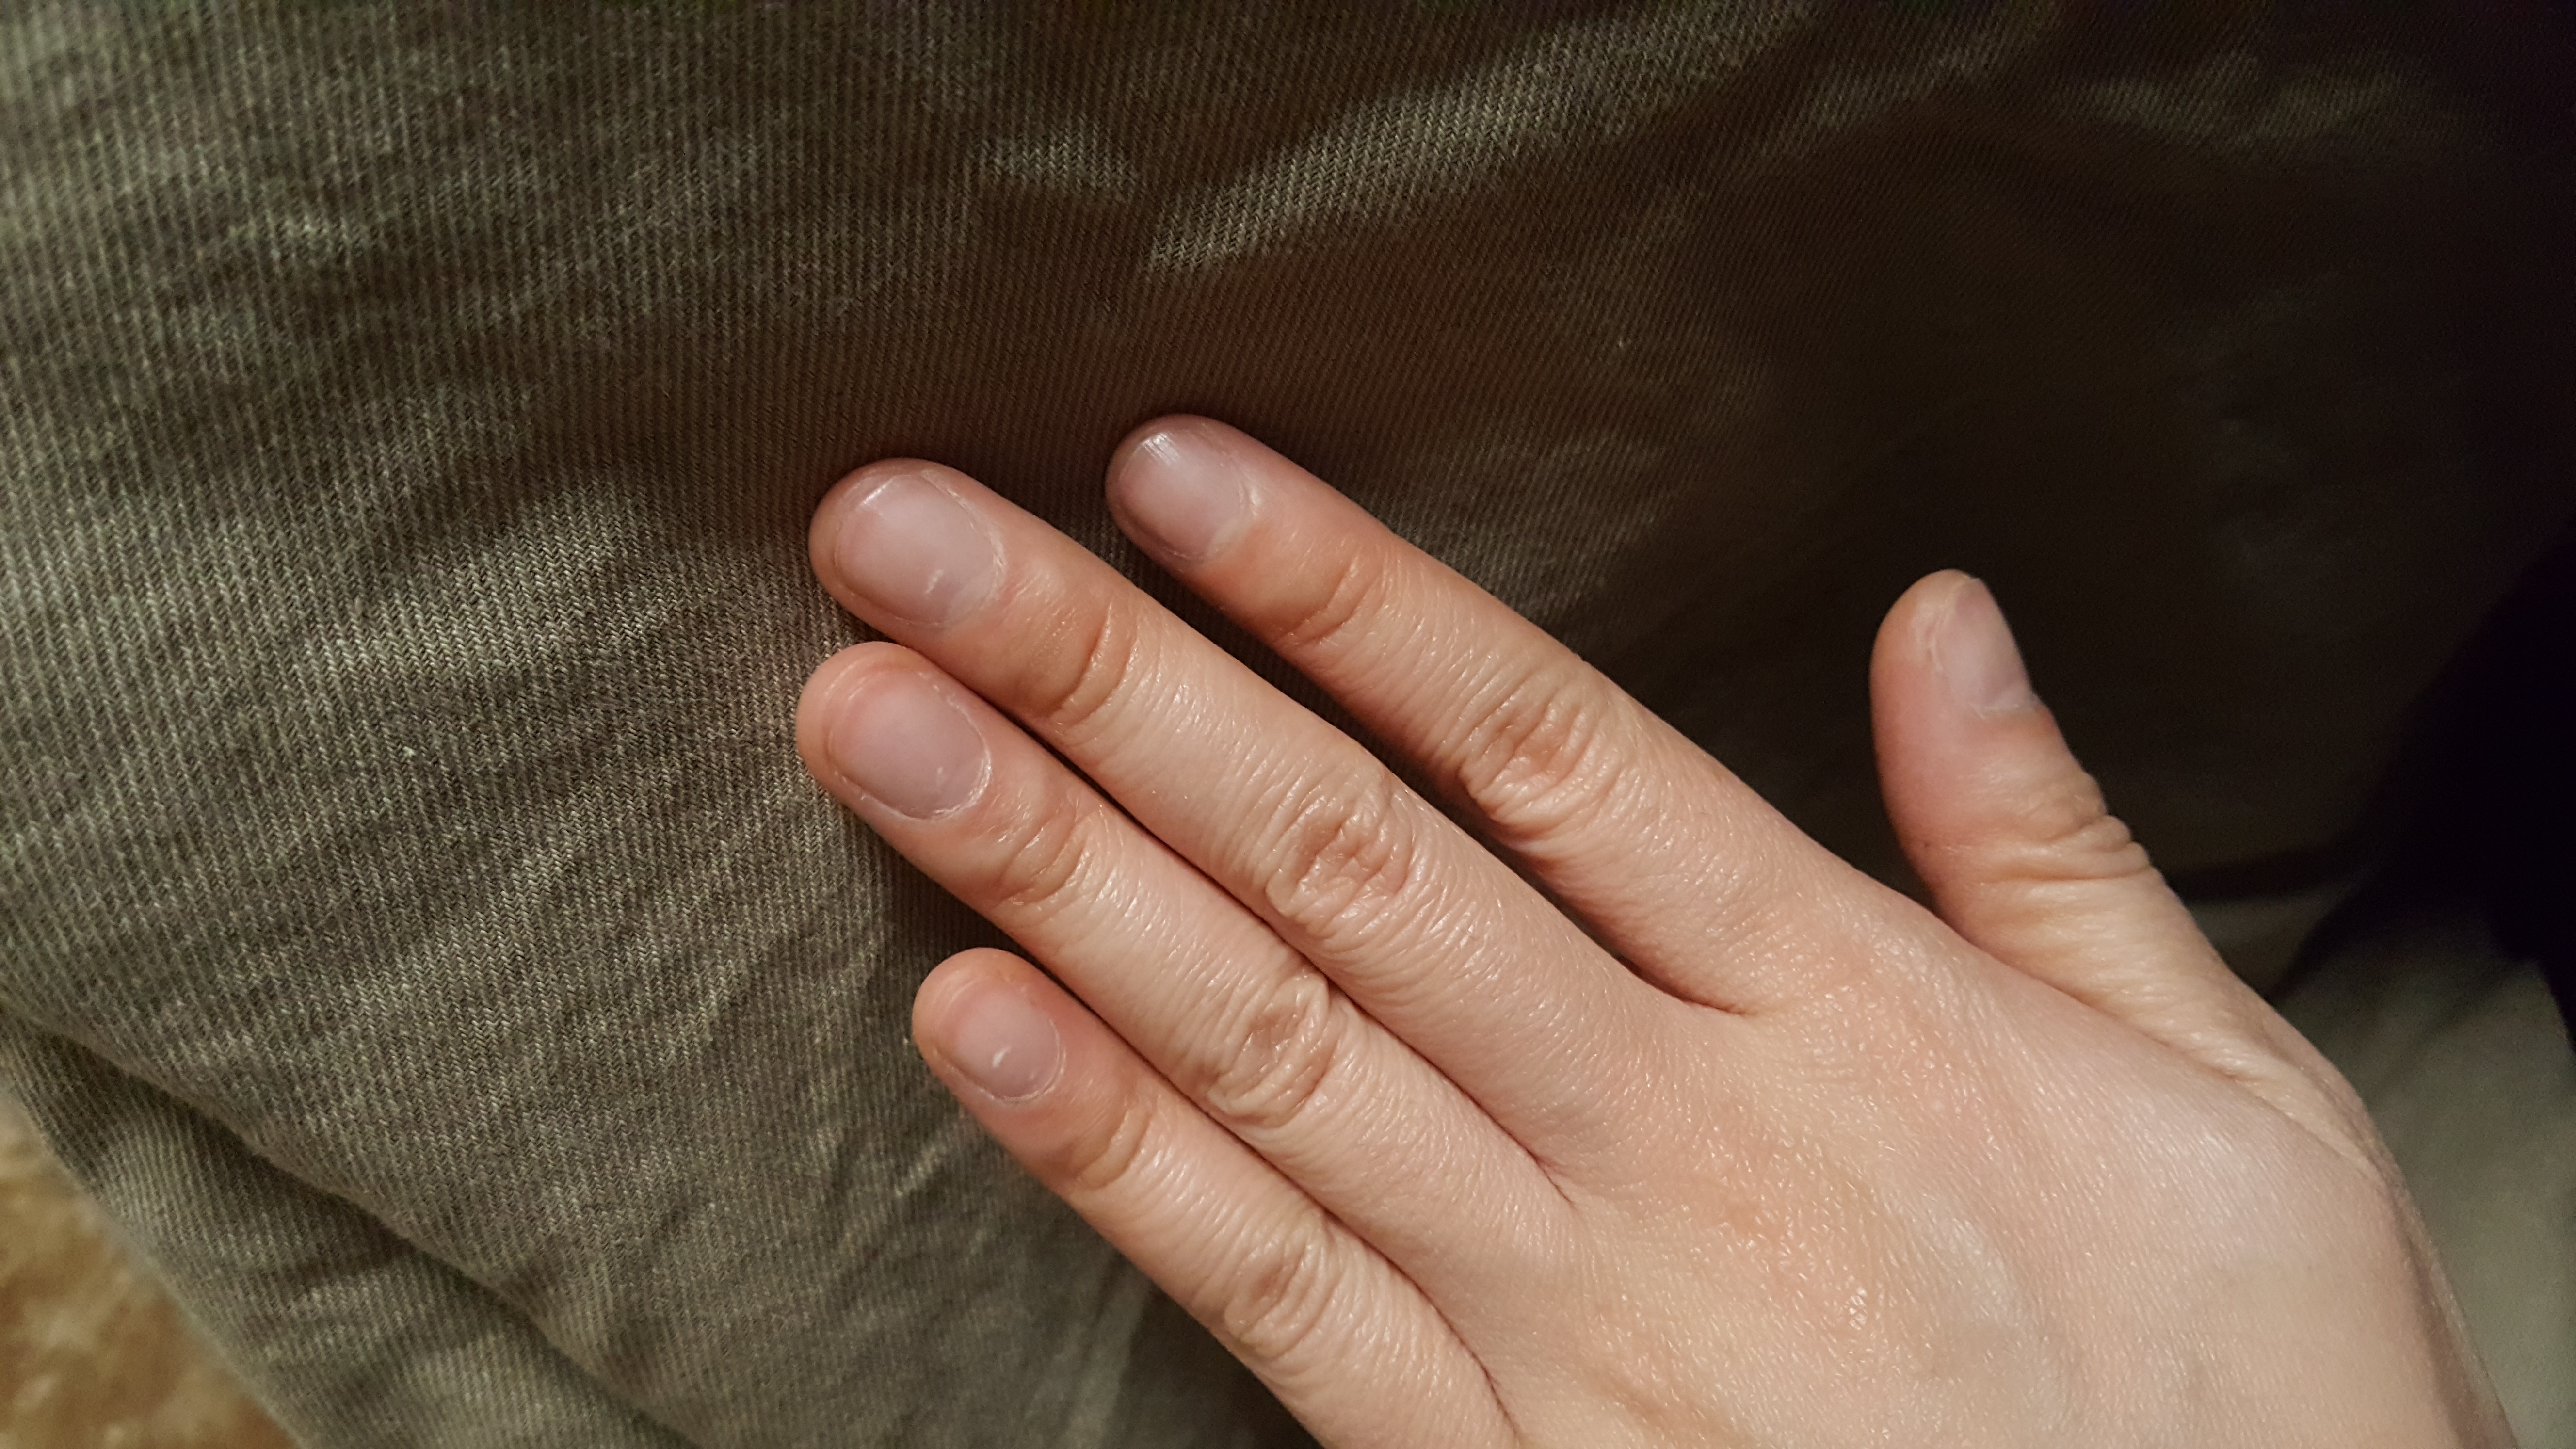 人の爪を研ぐだけ、何にもしてくれないネイルサロンに来るはずない。 | 爪から人生を整える。美しい爪が美しい日本を作る。100年後の爪を守る集団